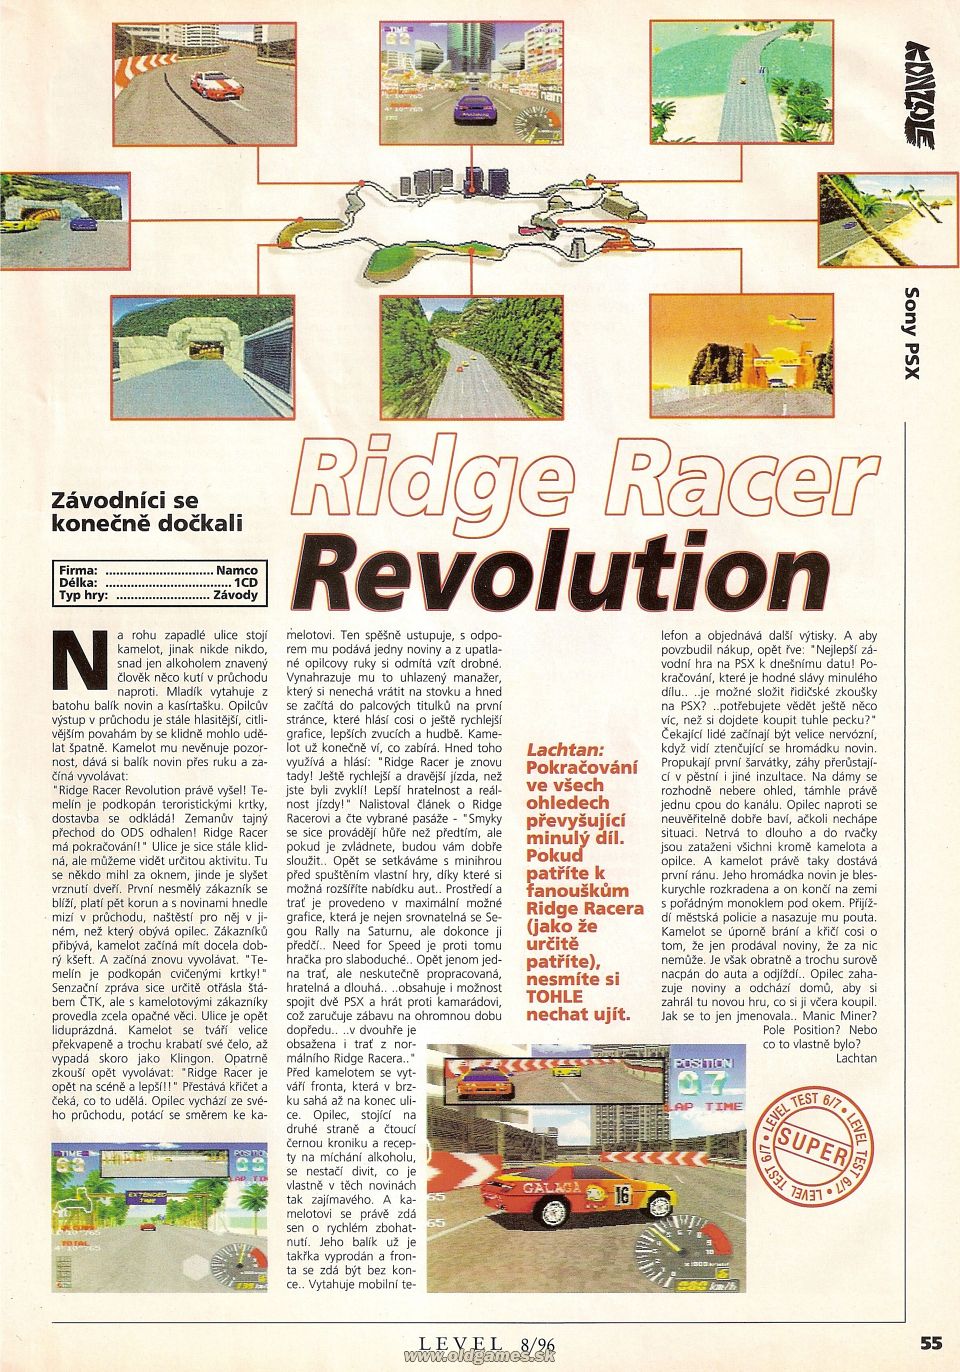 Ridge Racer: Revolution - PSX